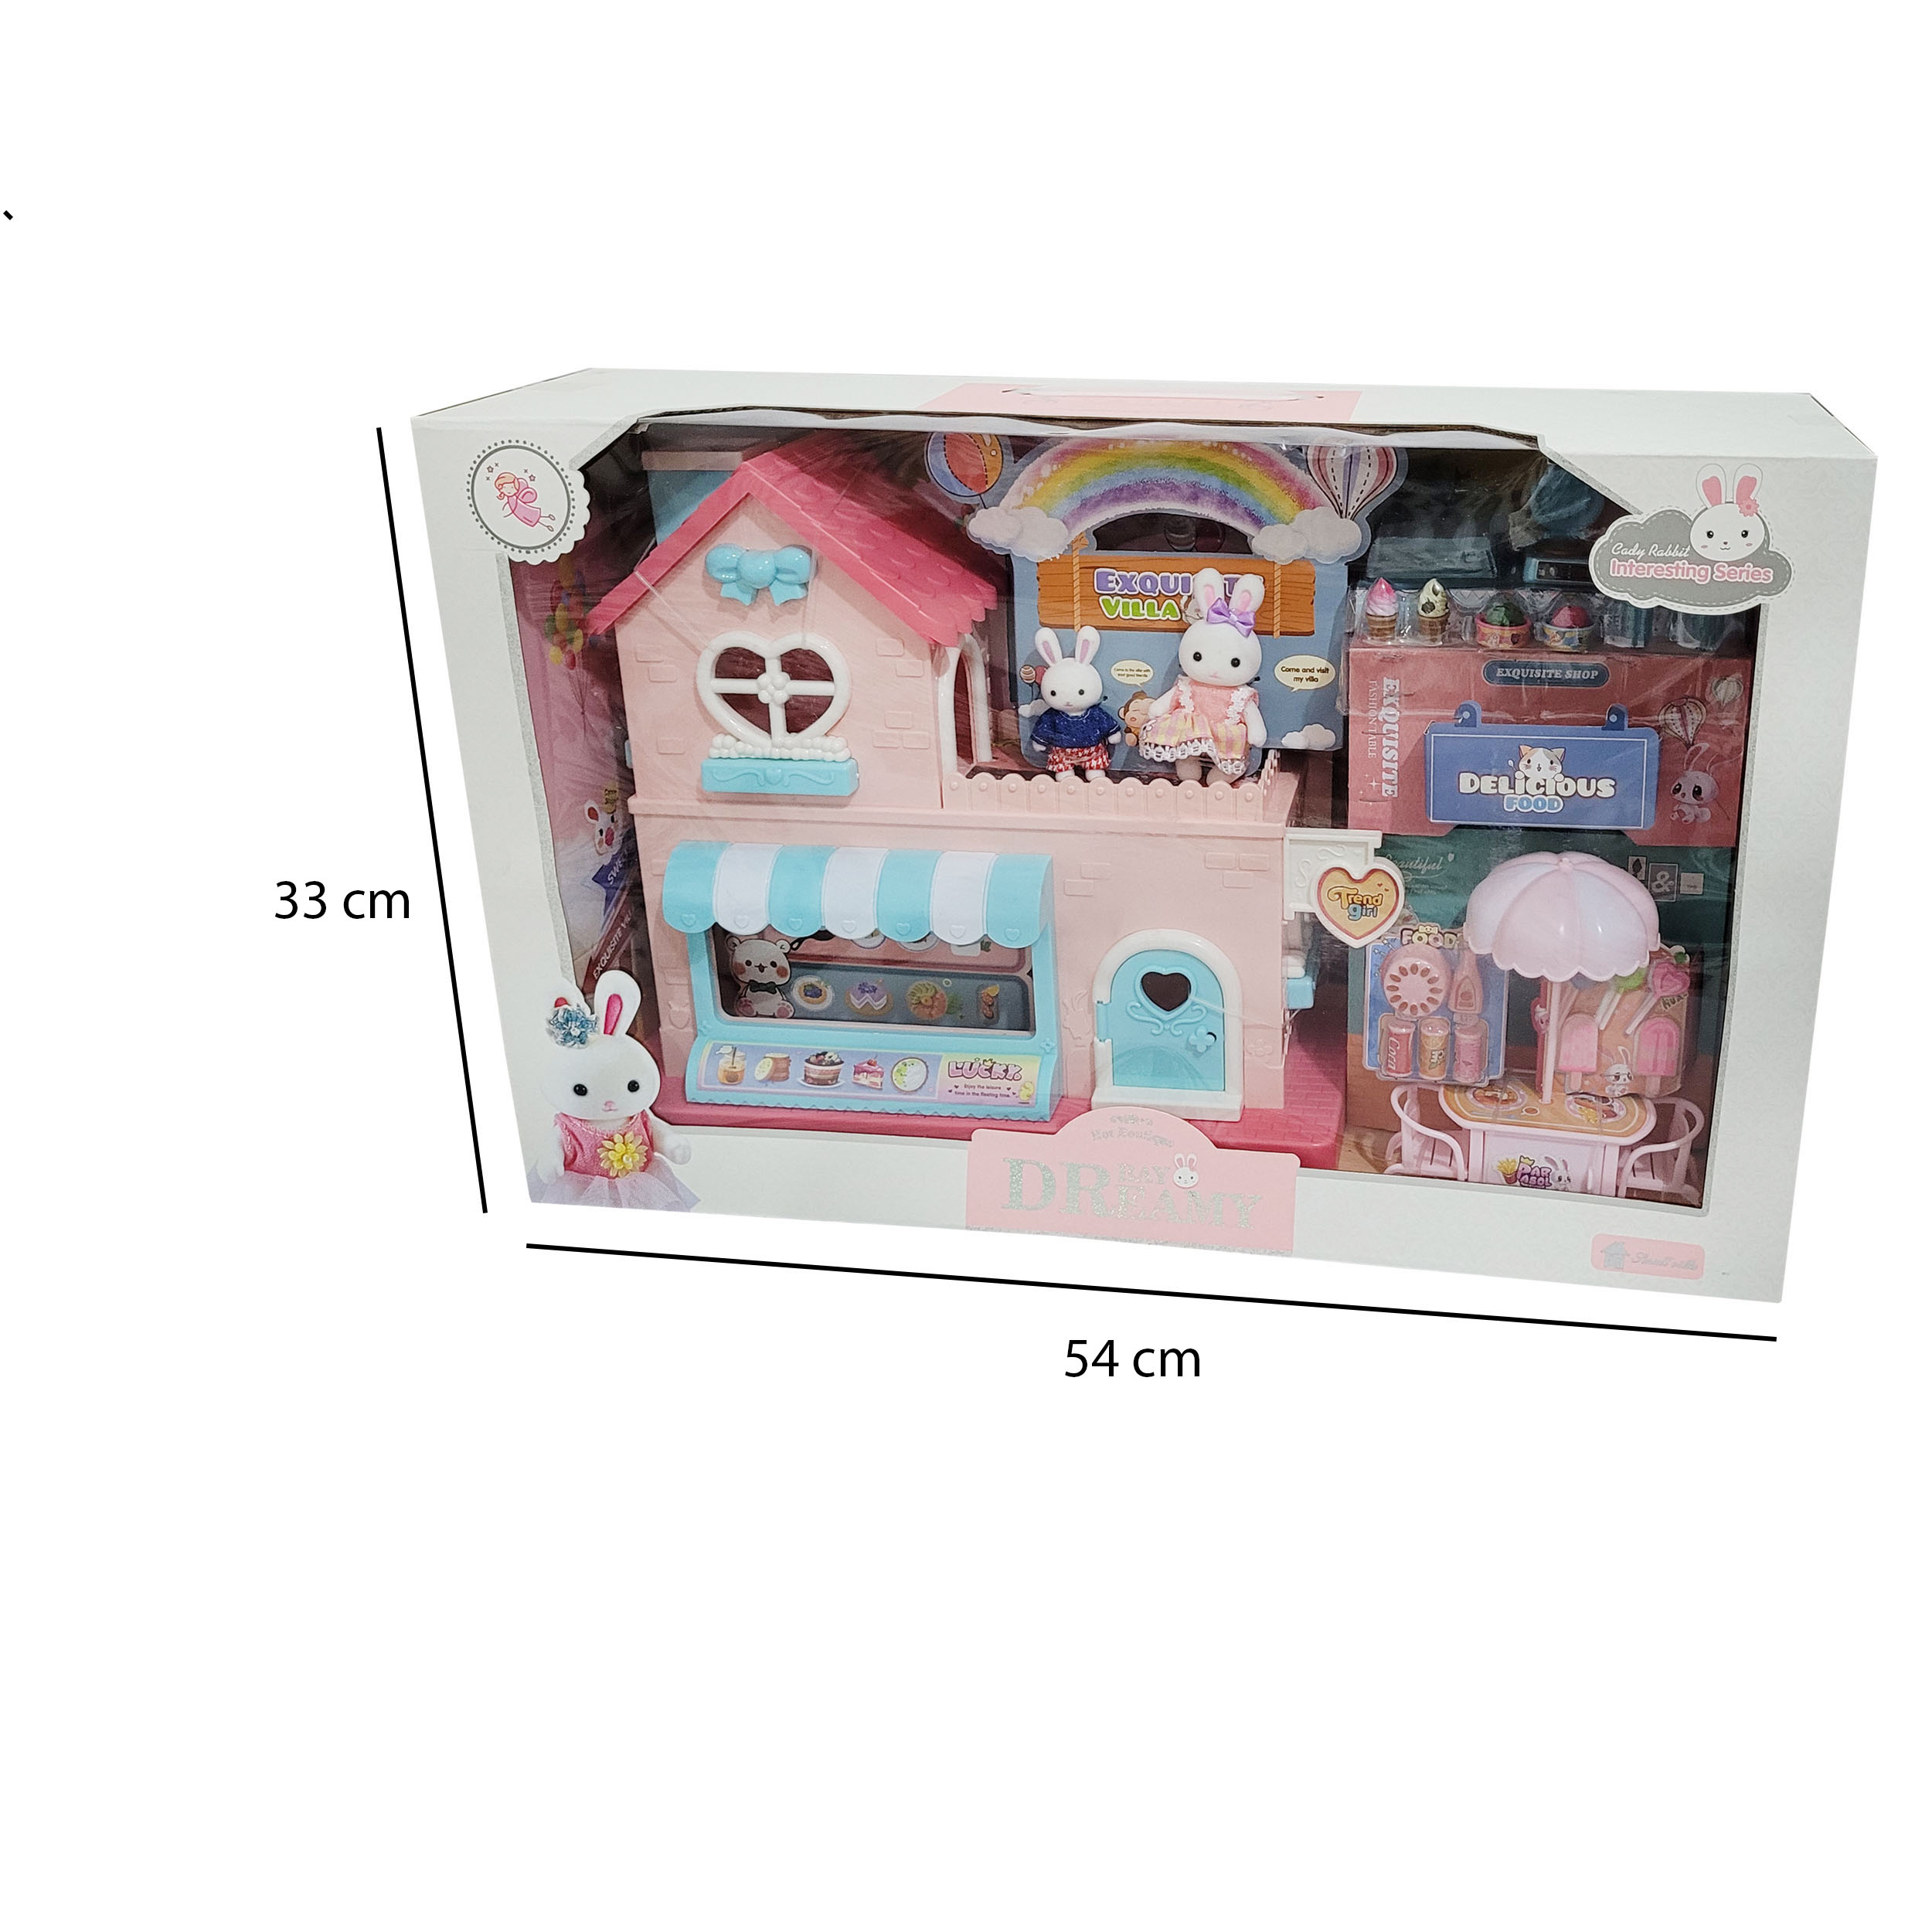 اسباب بازی مدل خانه عروسکی و بستنی فروشی خرگوش کد 6674